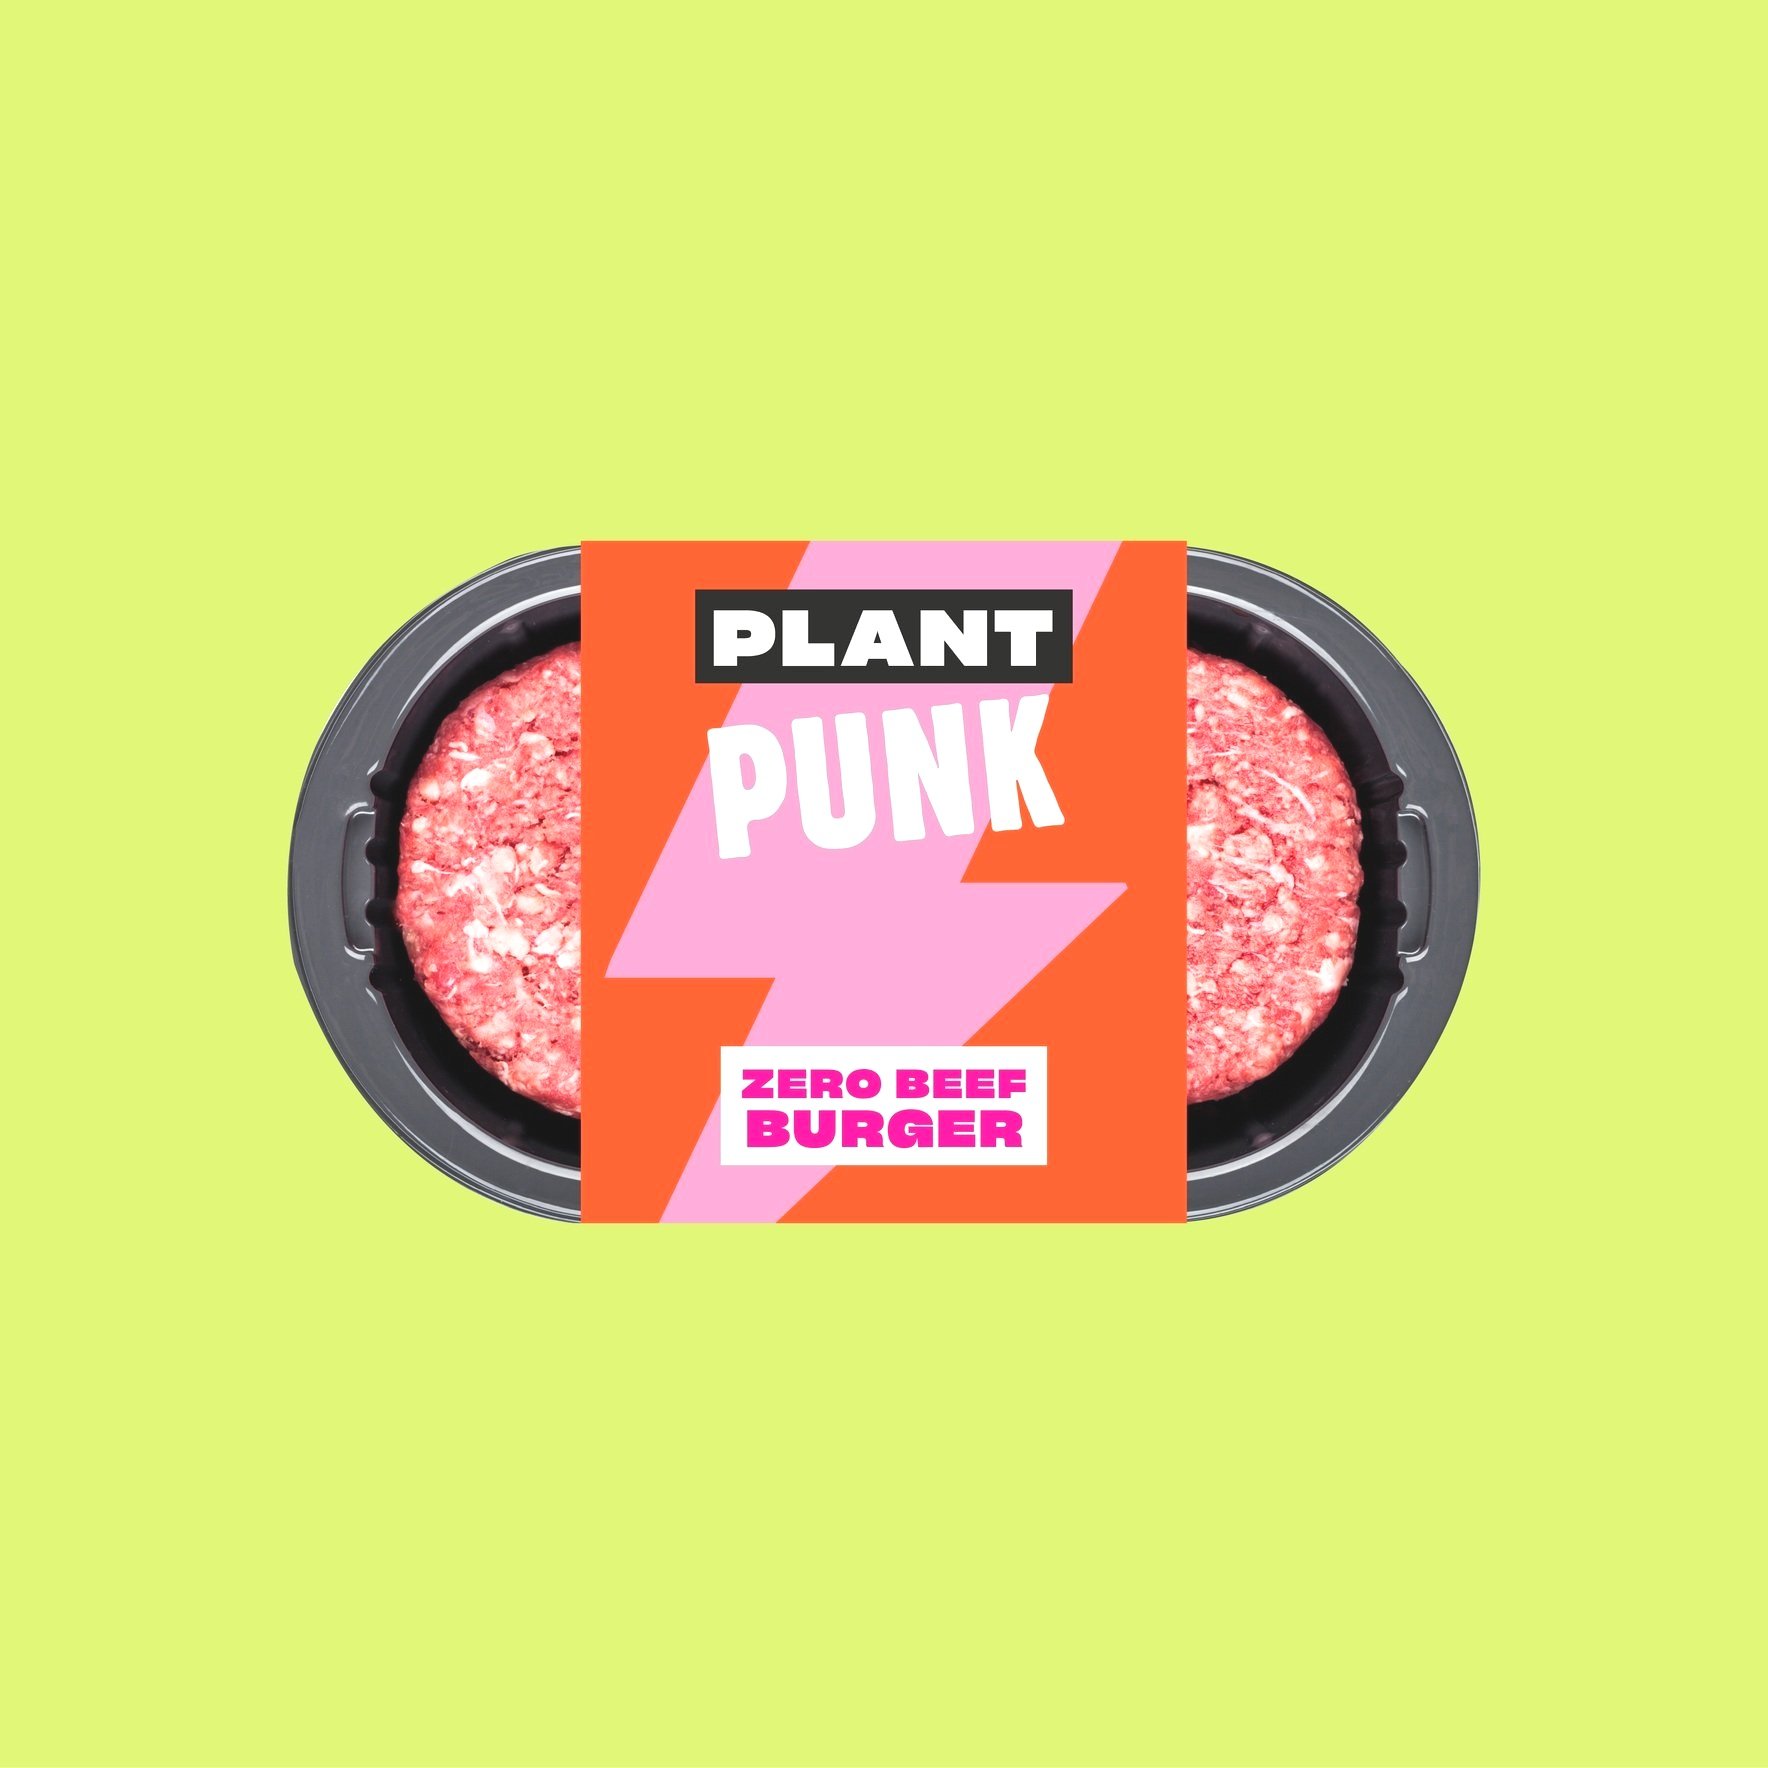 Packaging-designer-Packaging label design for a vegan alternative burger brand 